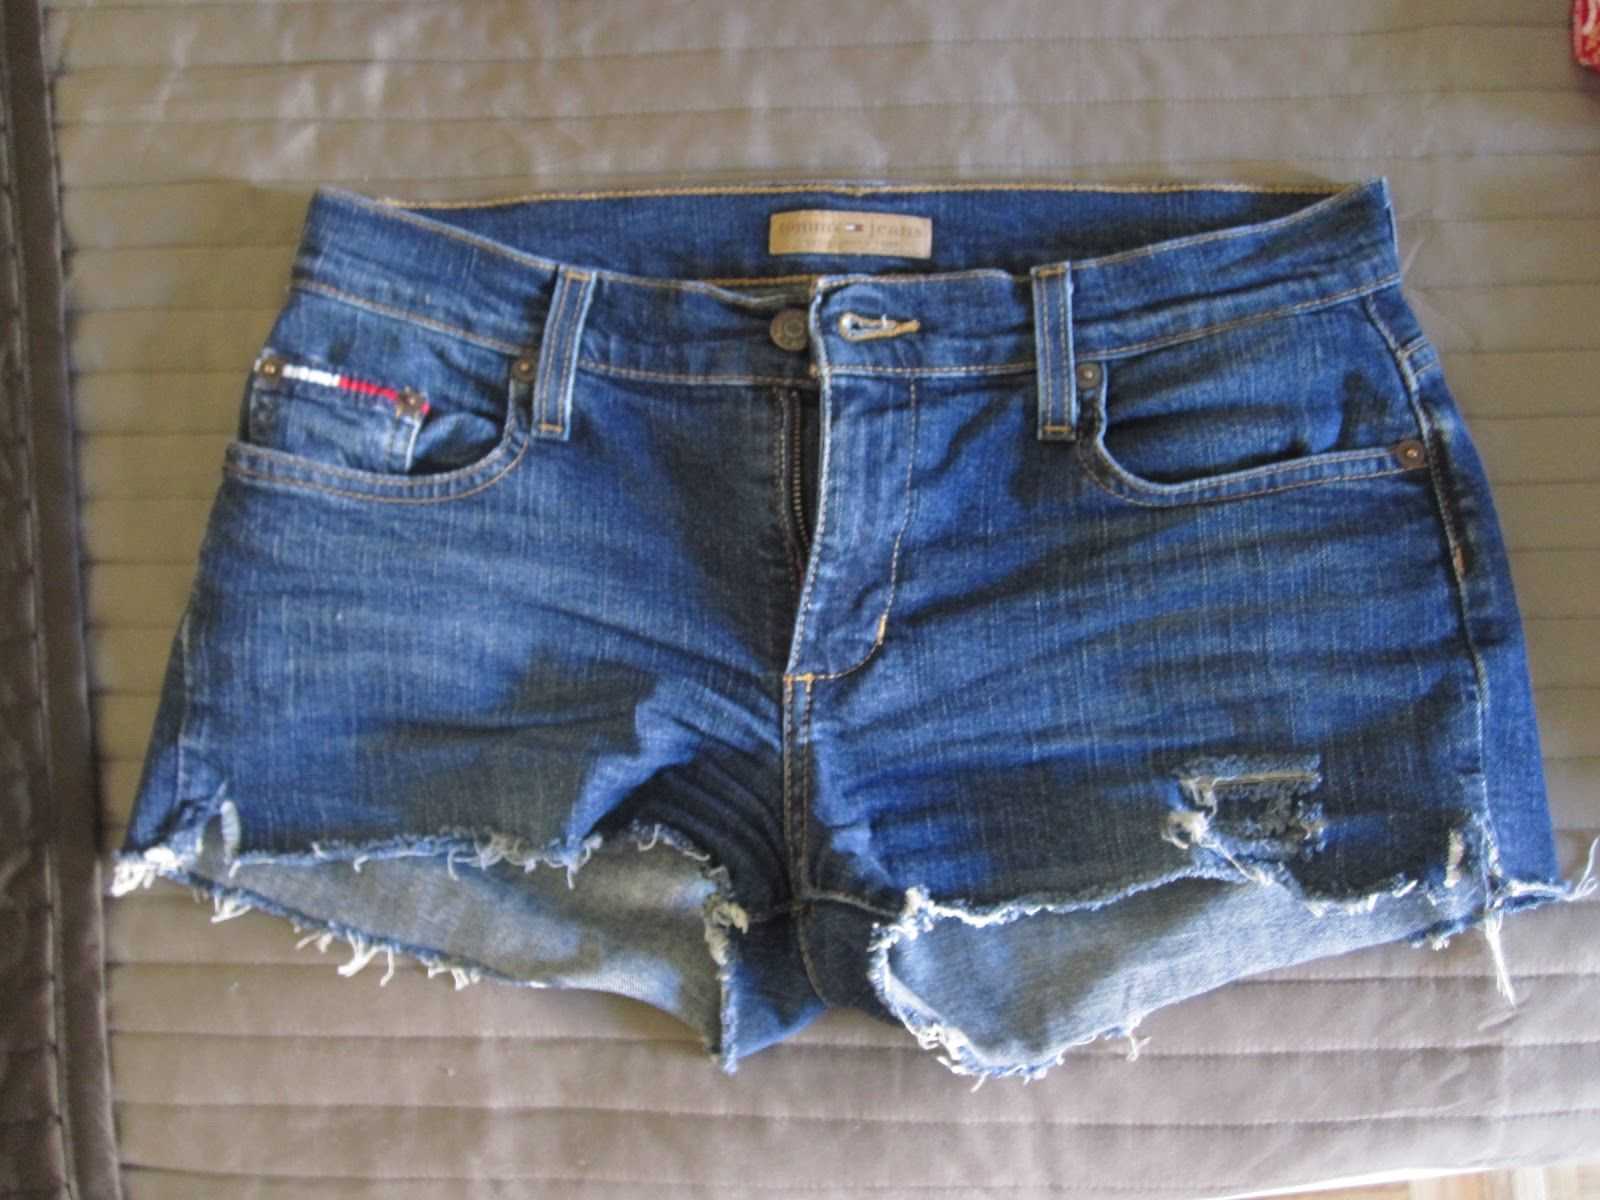 Шорты из старых джинс. Джинсовые шорты. Переделка джинс в шорты. Шорты из старых джинсов. Обрезать джинсы под шорты.